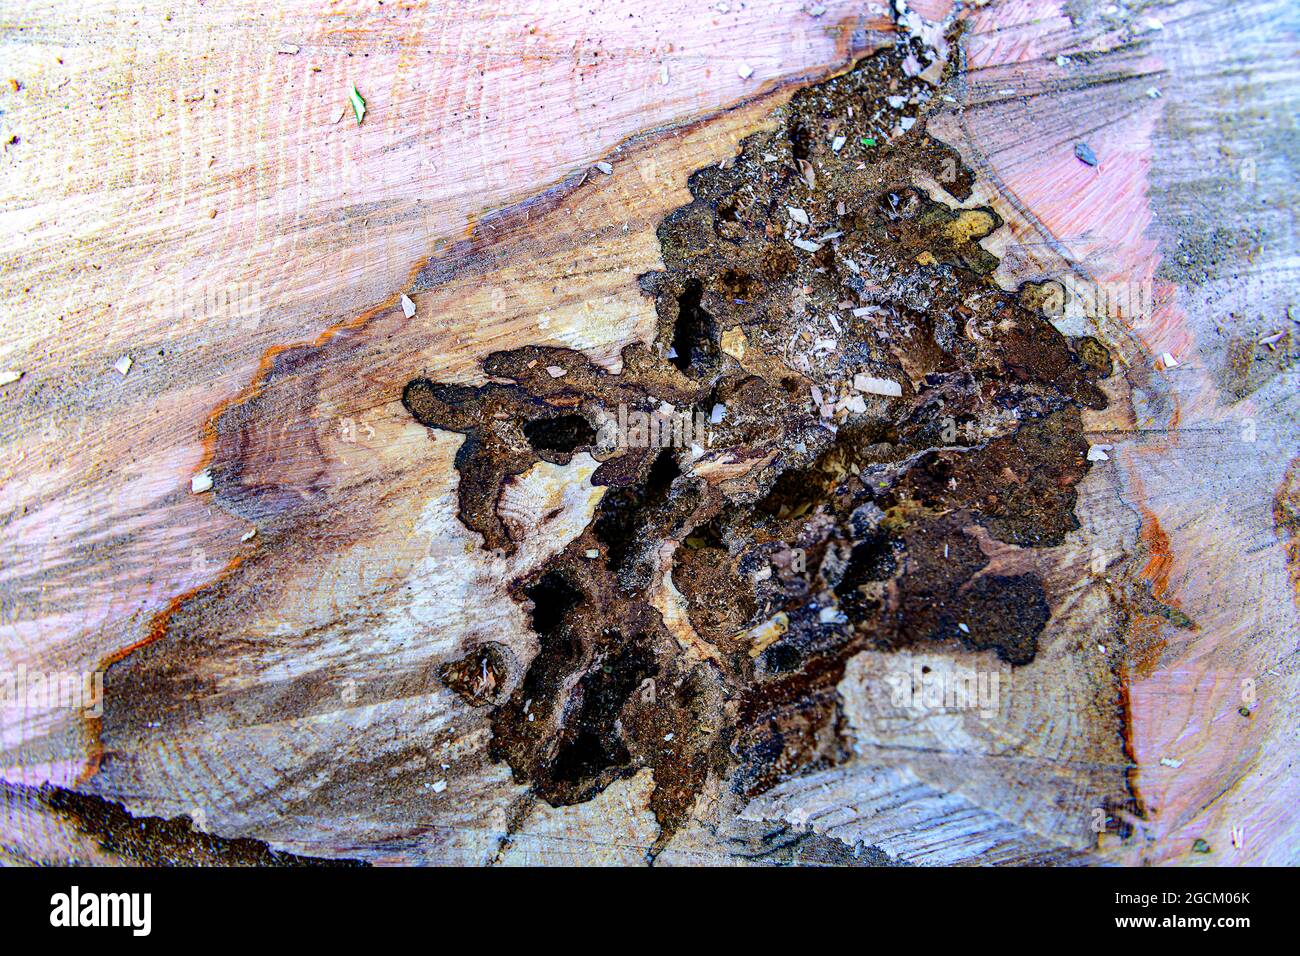 Eschenbaum stumpf die Überreste eines abgestorbenen Baumes, der für Aschesterben und Kernholzfäule abgeholzt wurde Stockfoto